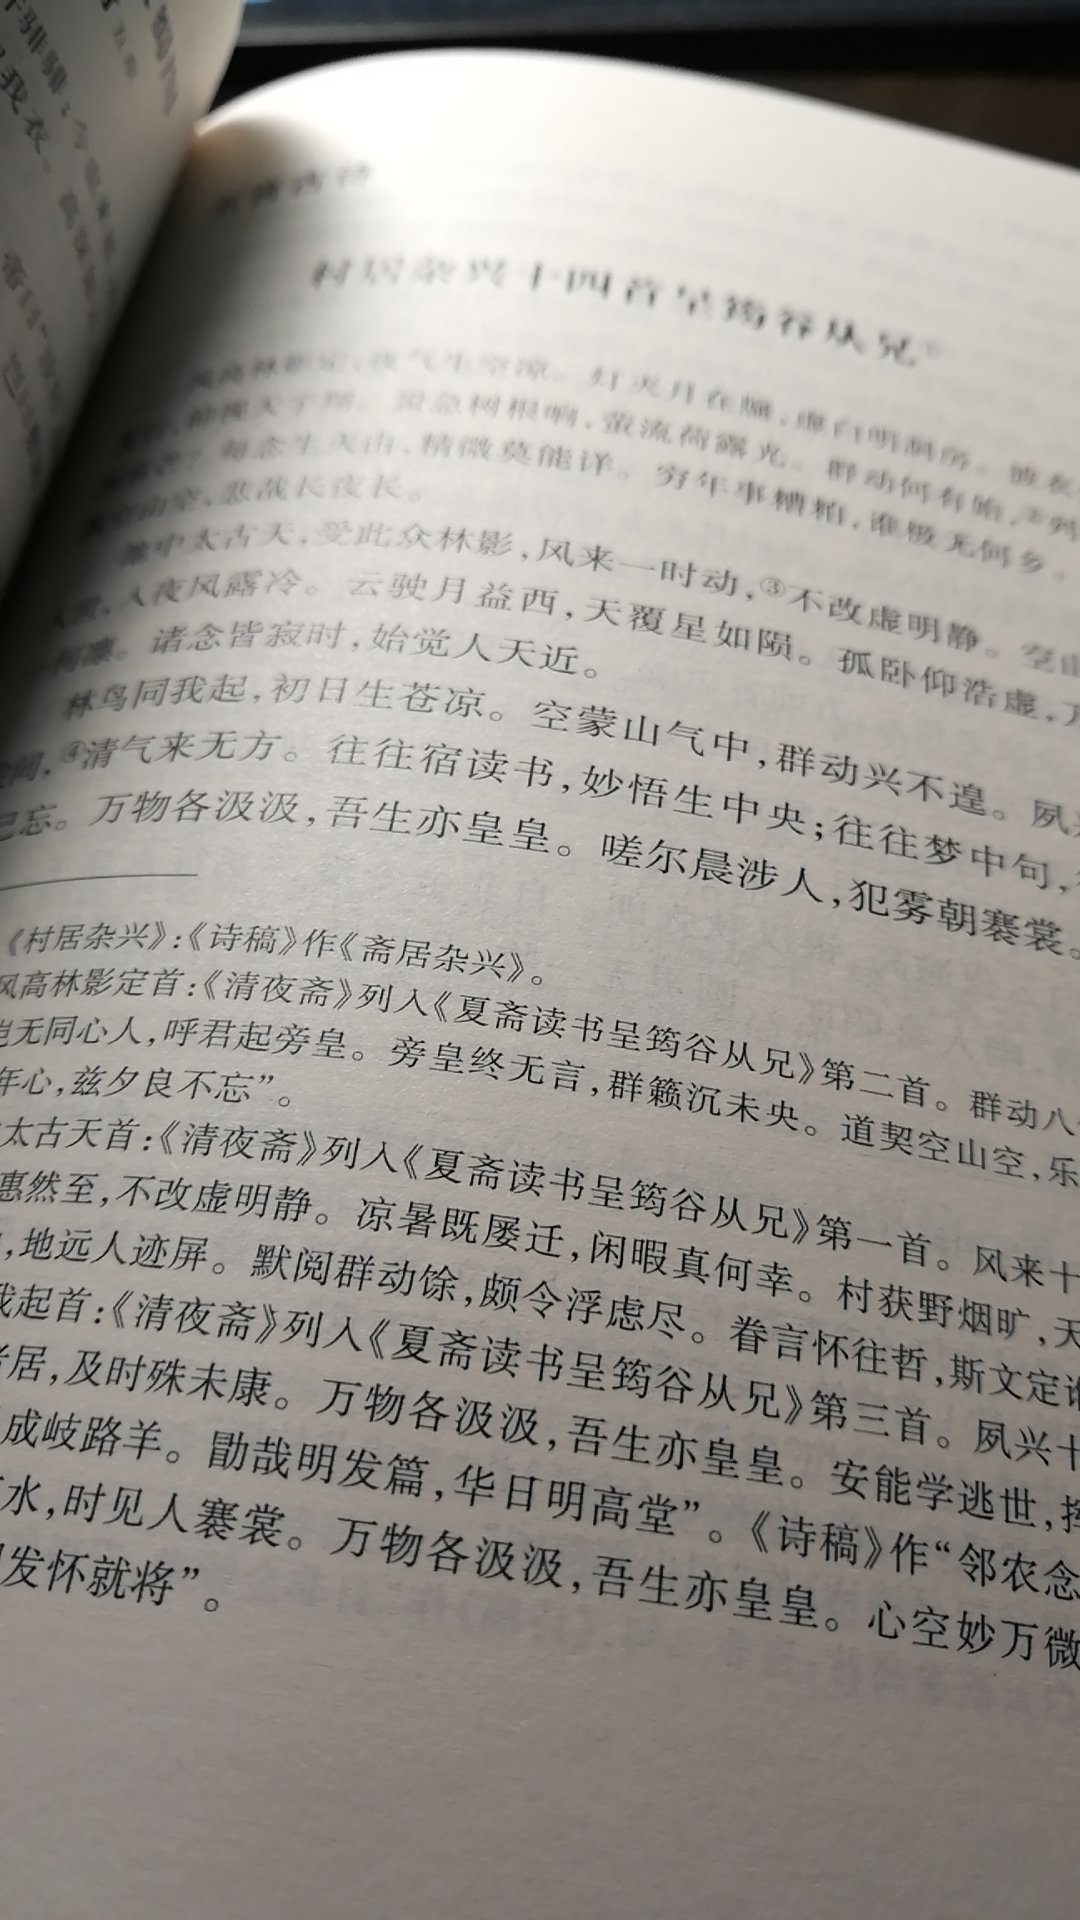 魏源近代睁眼看世界的人之一。中华书局把繁体竖排改成了简体横排，还挺好的。